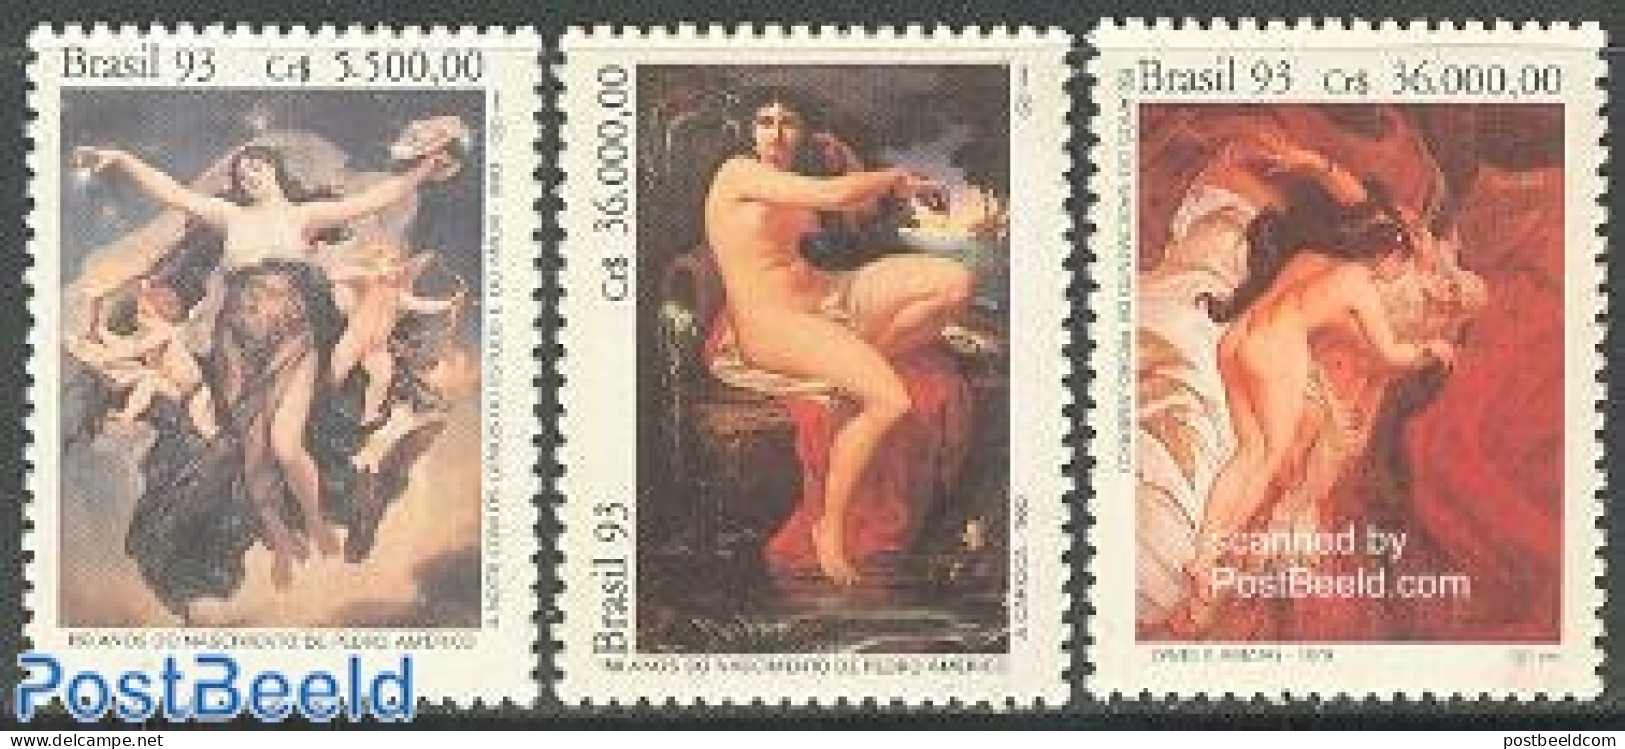 Brazil 1993 Pedro Americo 3v, Mint NH, Art - Nude Paintings - Paintings - Unused Stamps